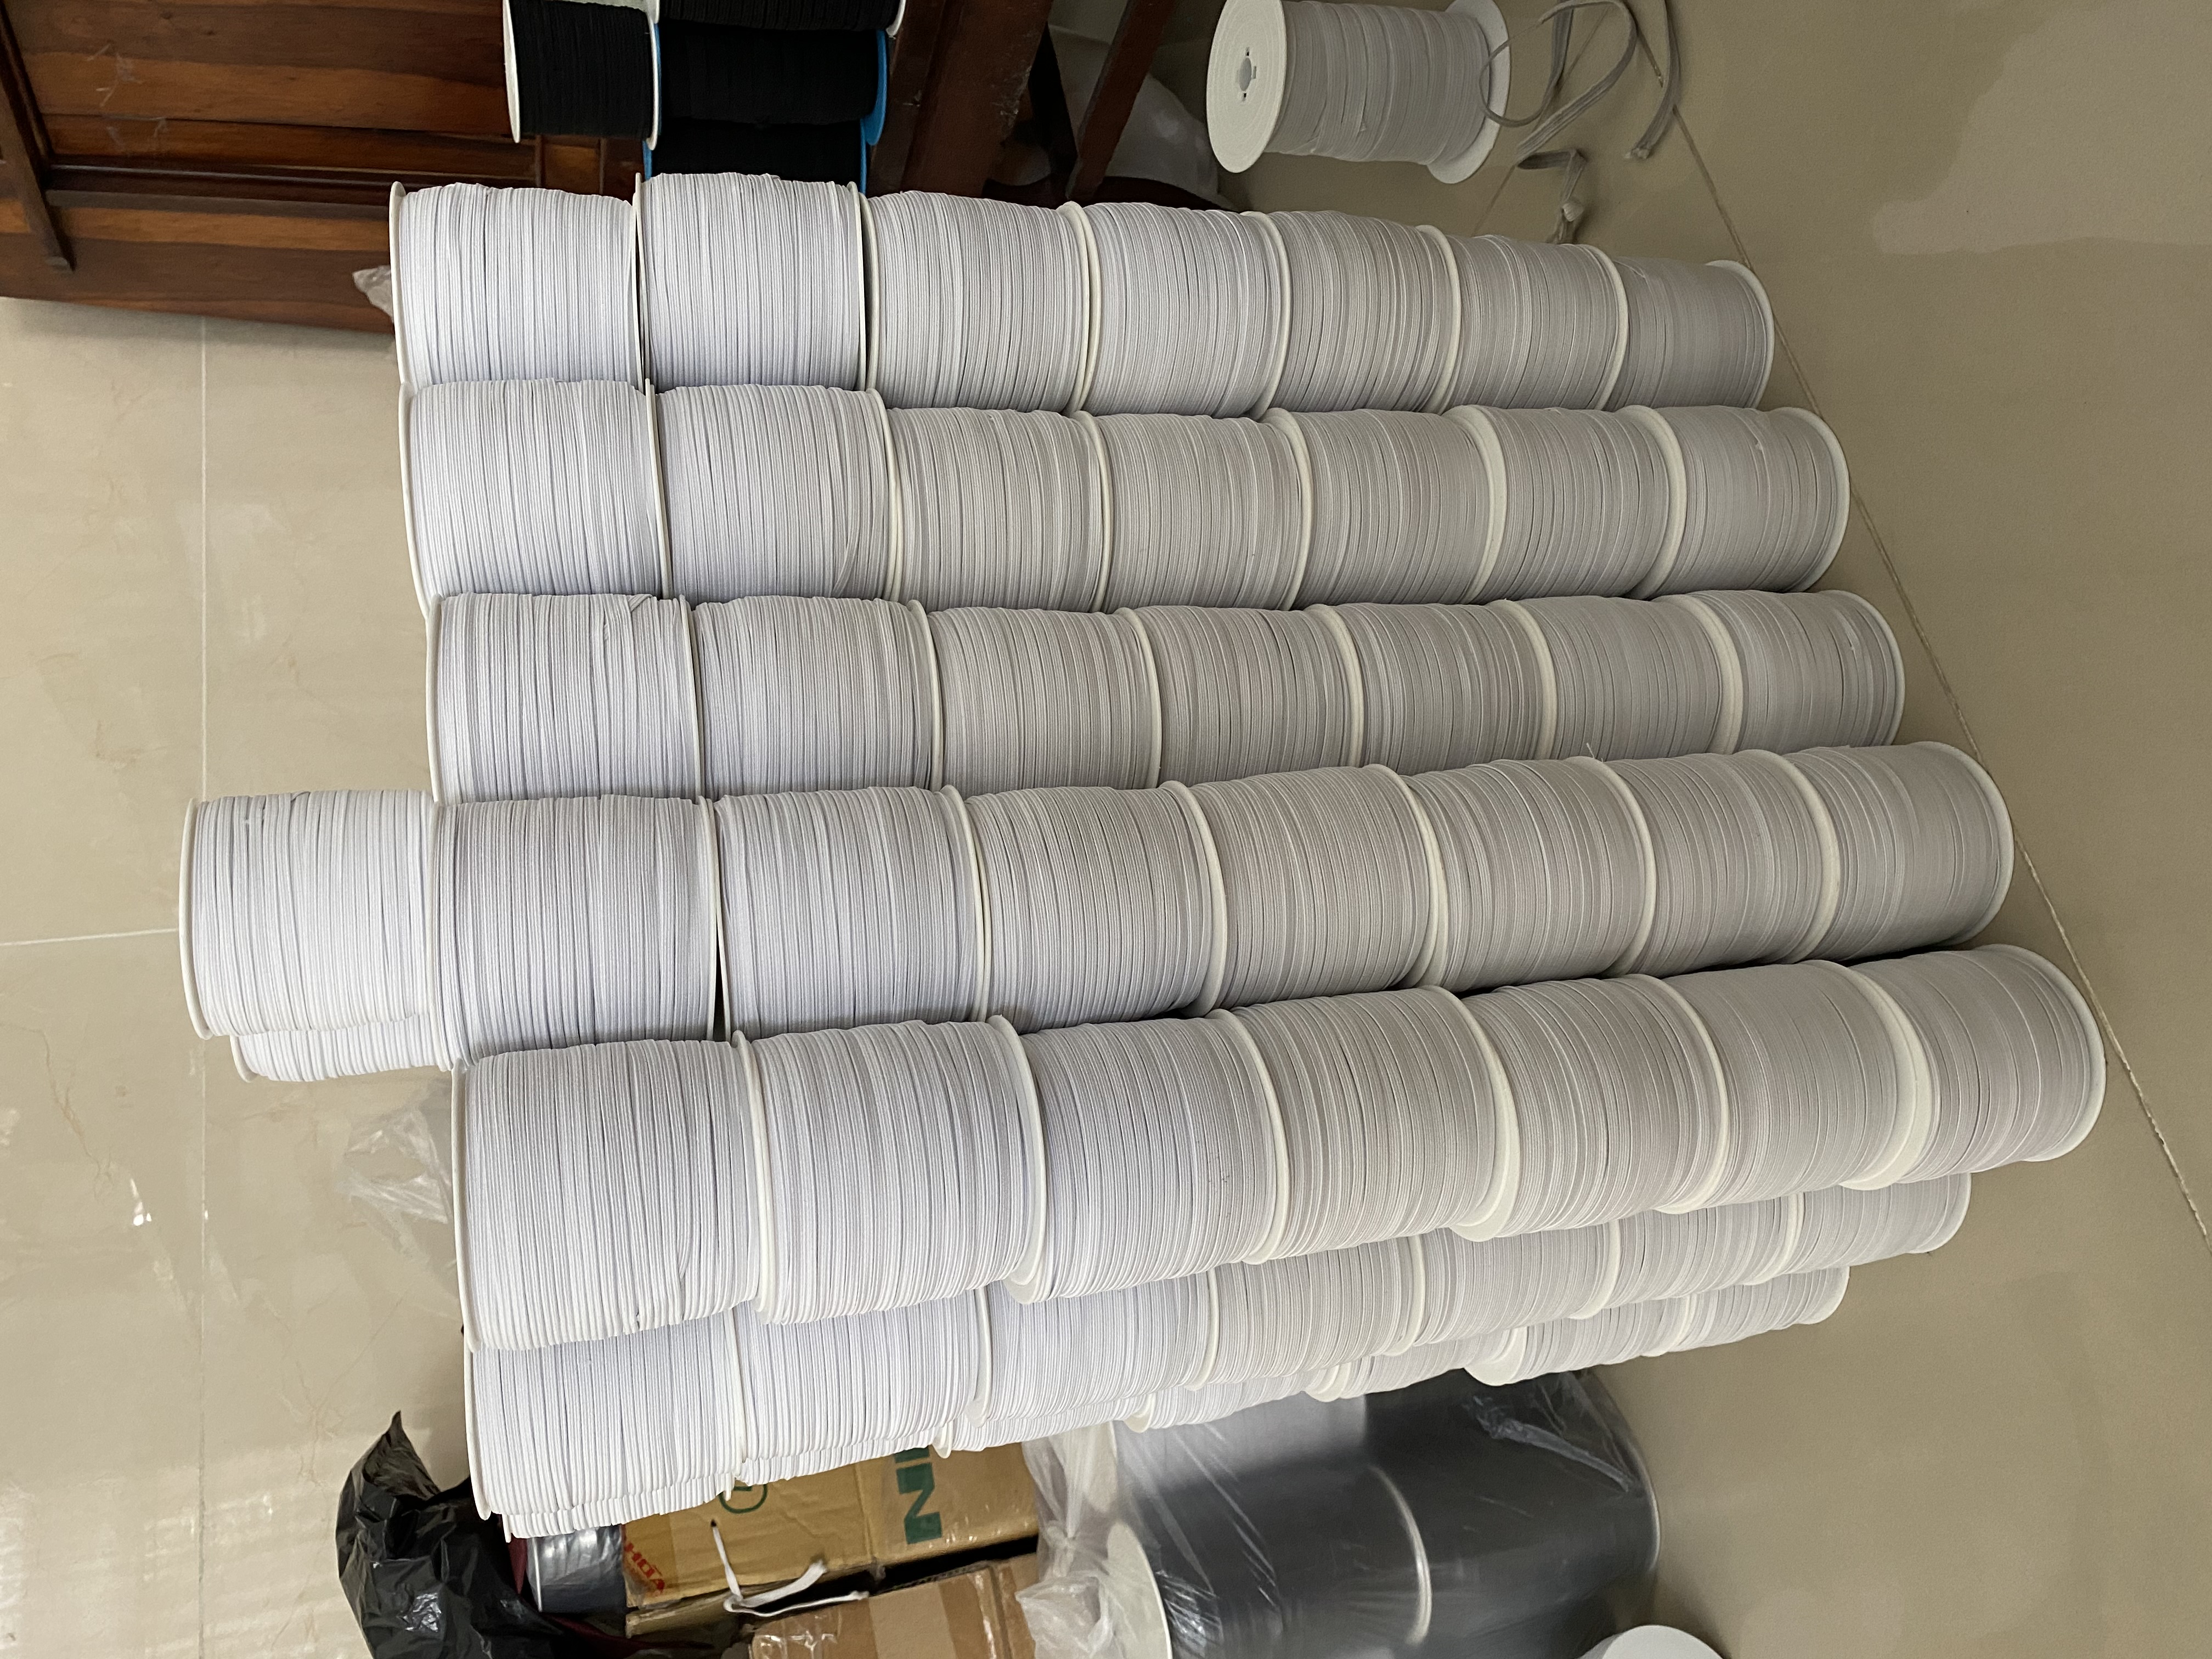 Thun luồn quần áo bản 3mm (số 4) màu trắng và đen cuộn dài 100 mét